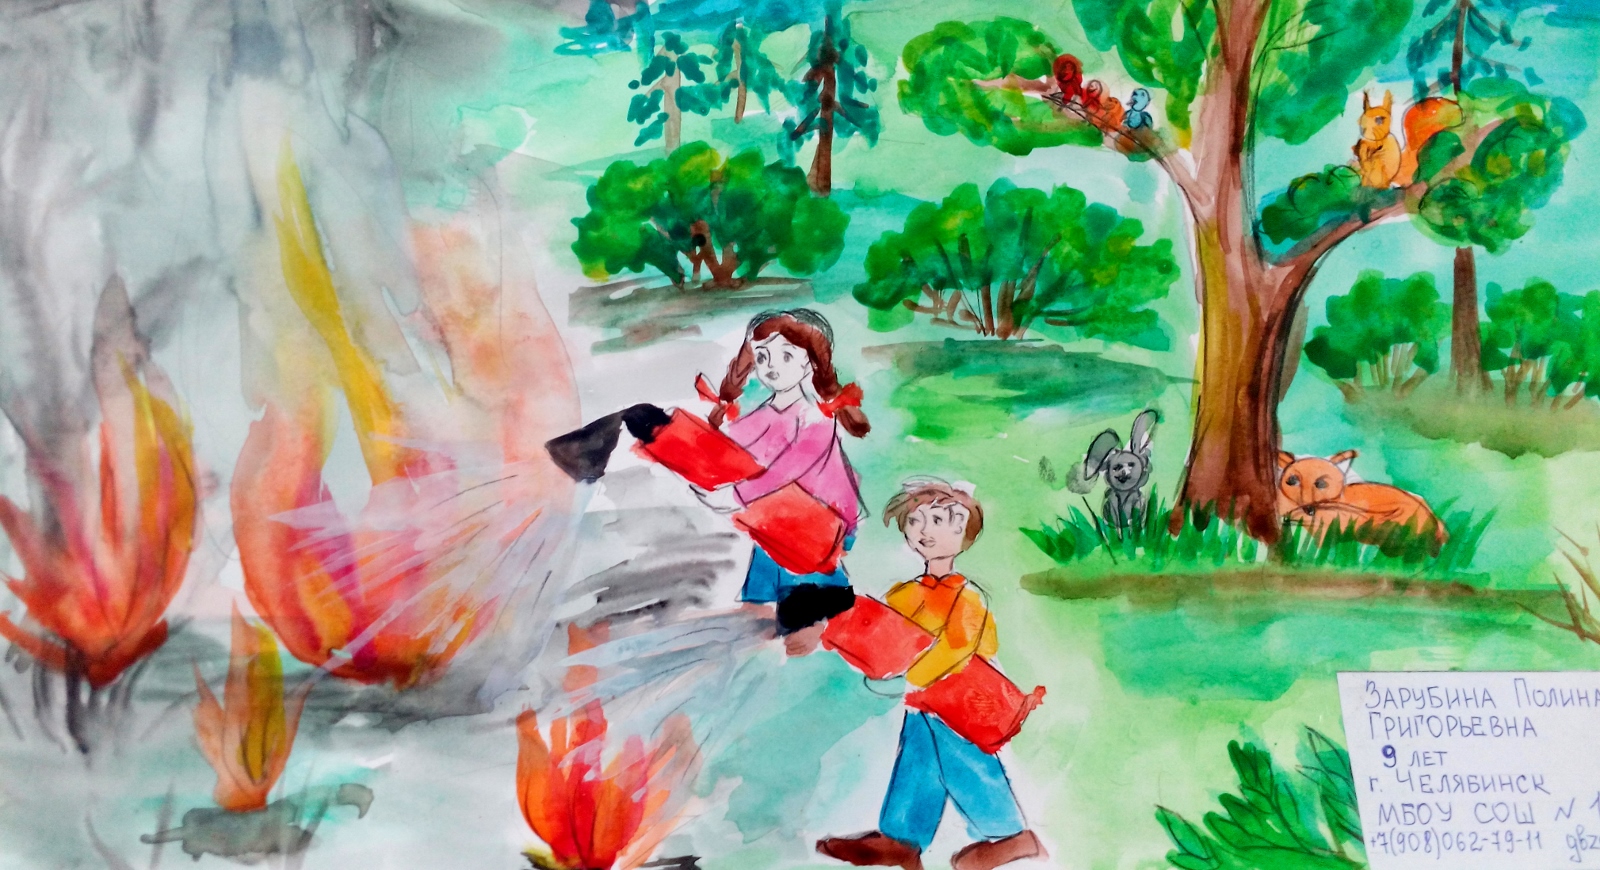 Зарубина Полина, 9 лет, школа  12, г. Челябинск. Дети против огня в лесу!